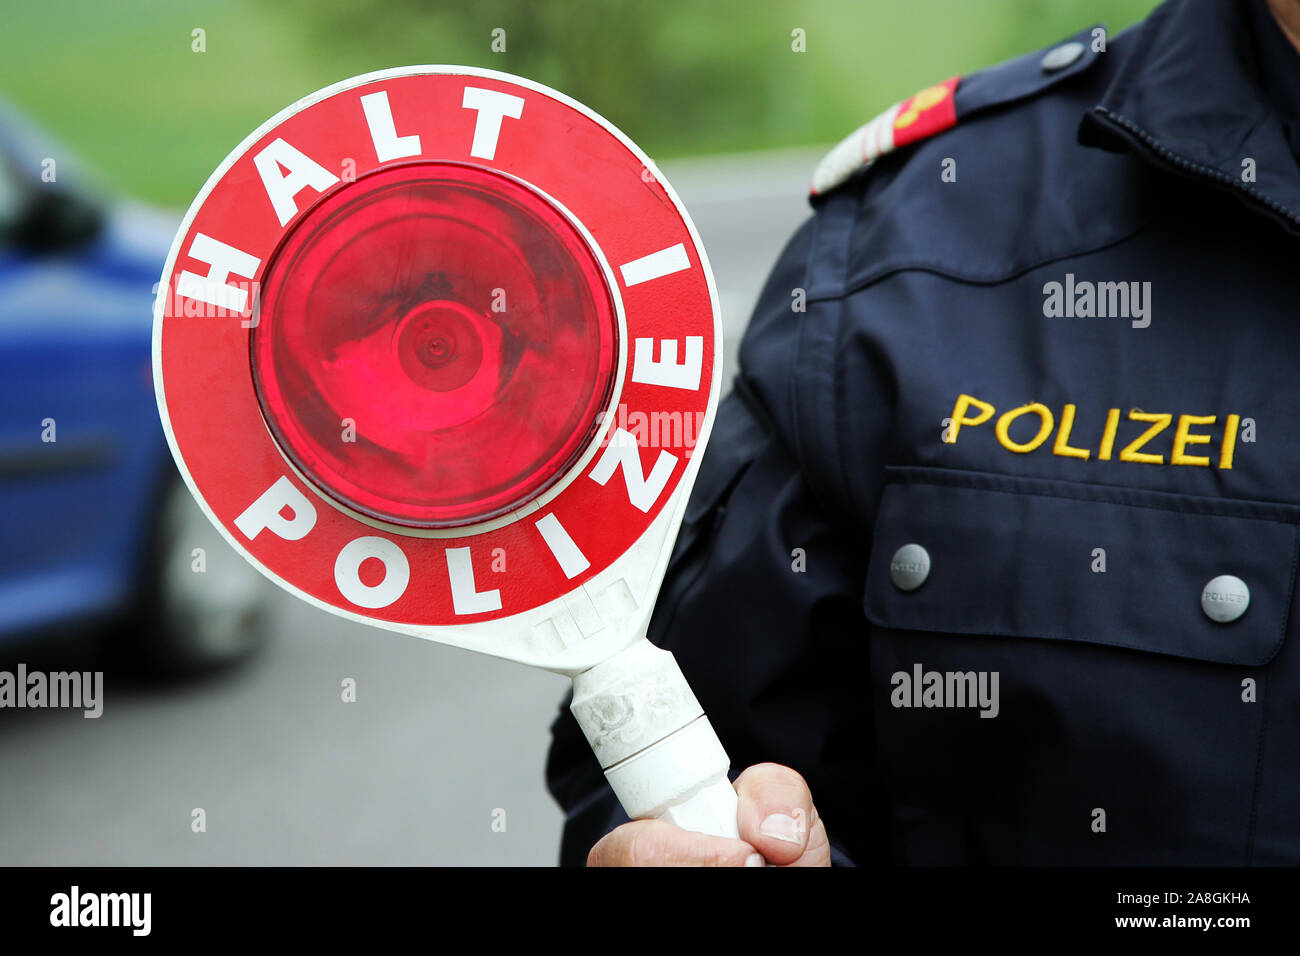 Halt Polizei, Polizist mit Polizeikelle Stock Photo - Alamy